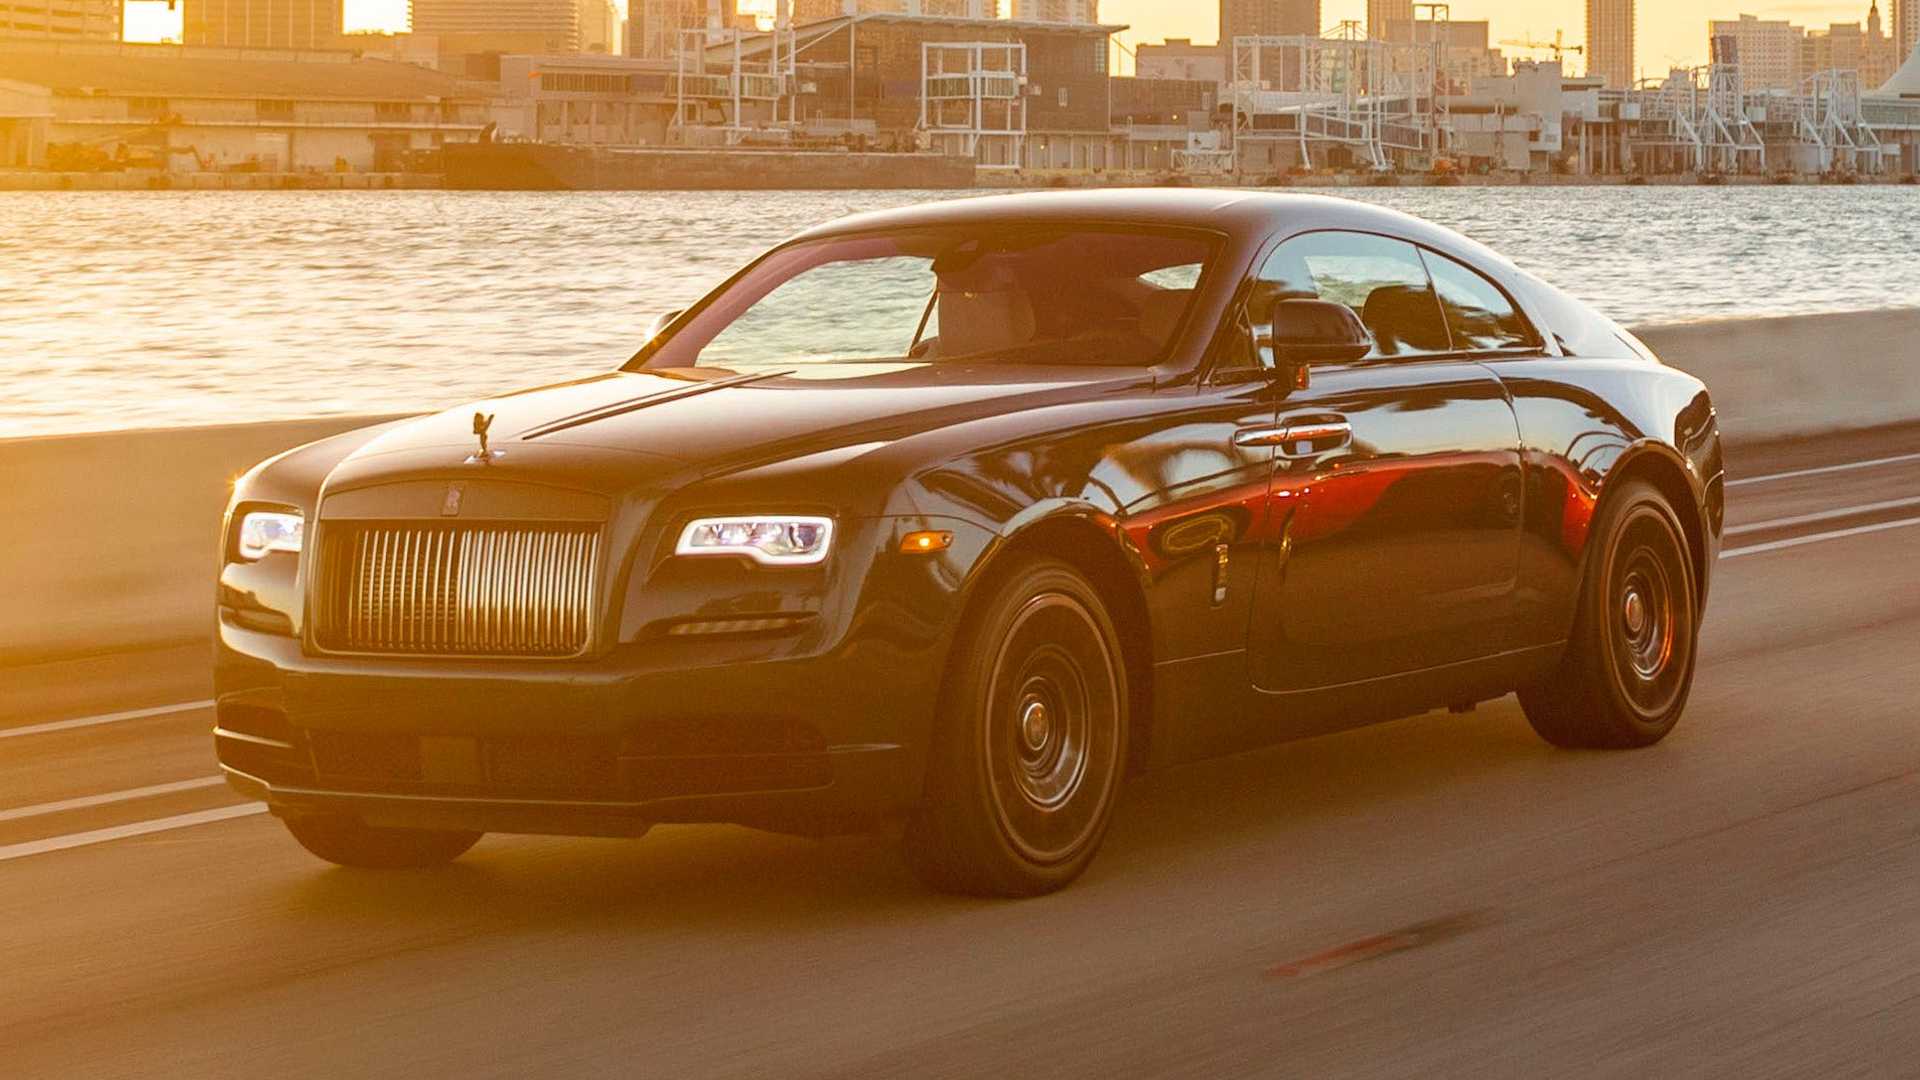 Khám phá Miami cùng siêu phẩm Rolls-Royce Wraith Black Badge